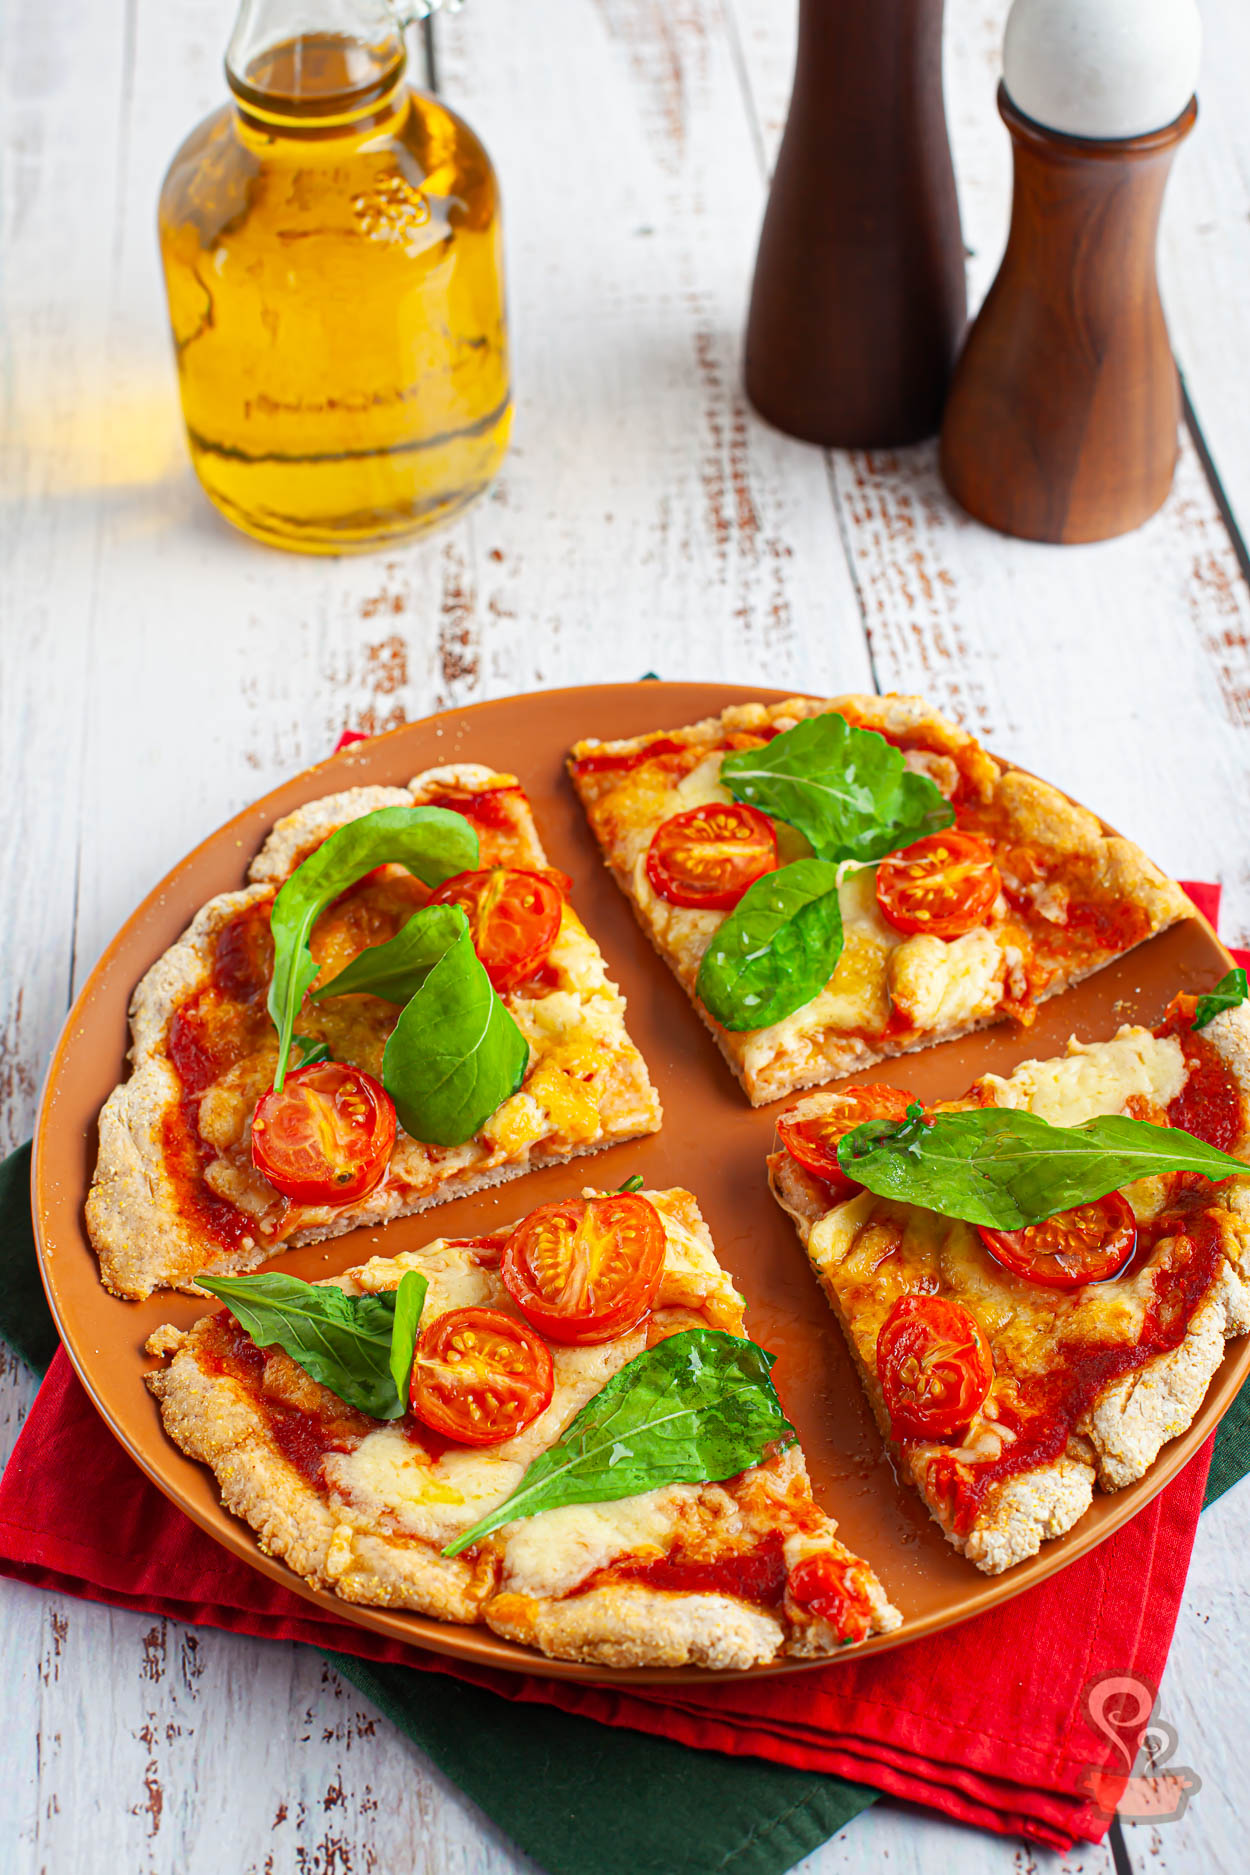 Pizza saudável - Quero Comida de Verdade - Alimentação saudável